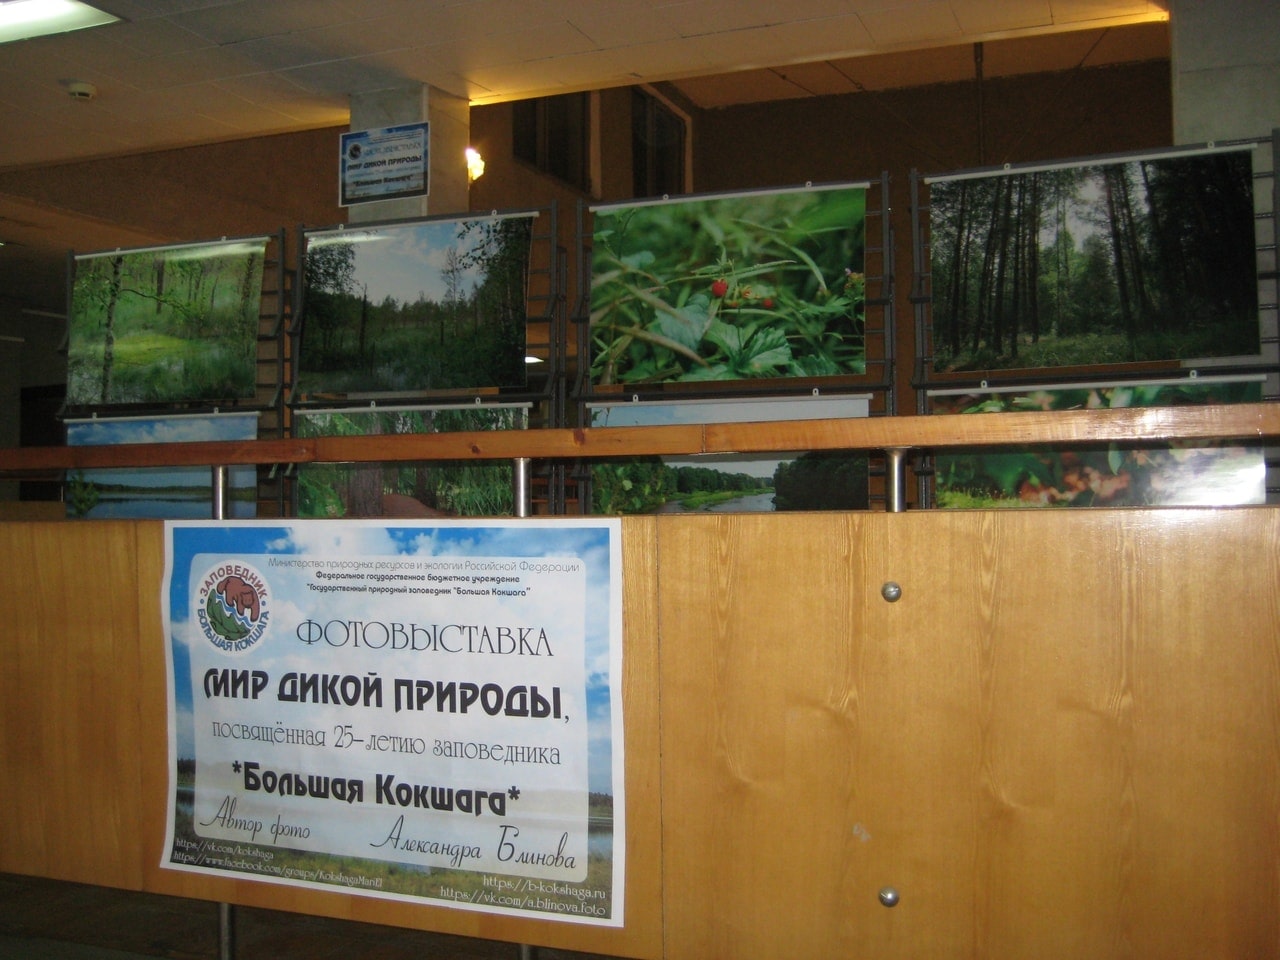 20 ноября 2018 года в Национальной библиотеке имени С.Г. Чавайна г. Йошкар -Олы открылась фотовыставка заповедника "Большая Кокшага" - "МИР ДИКОЙ ПРИРОДЫ".